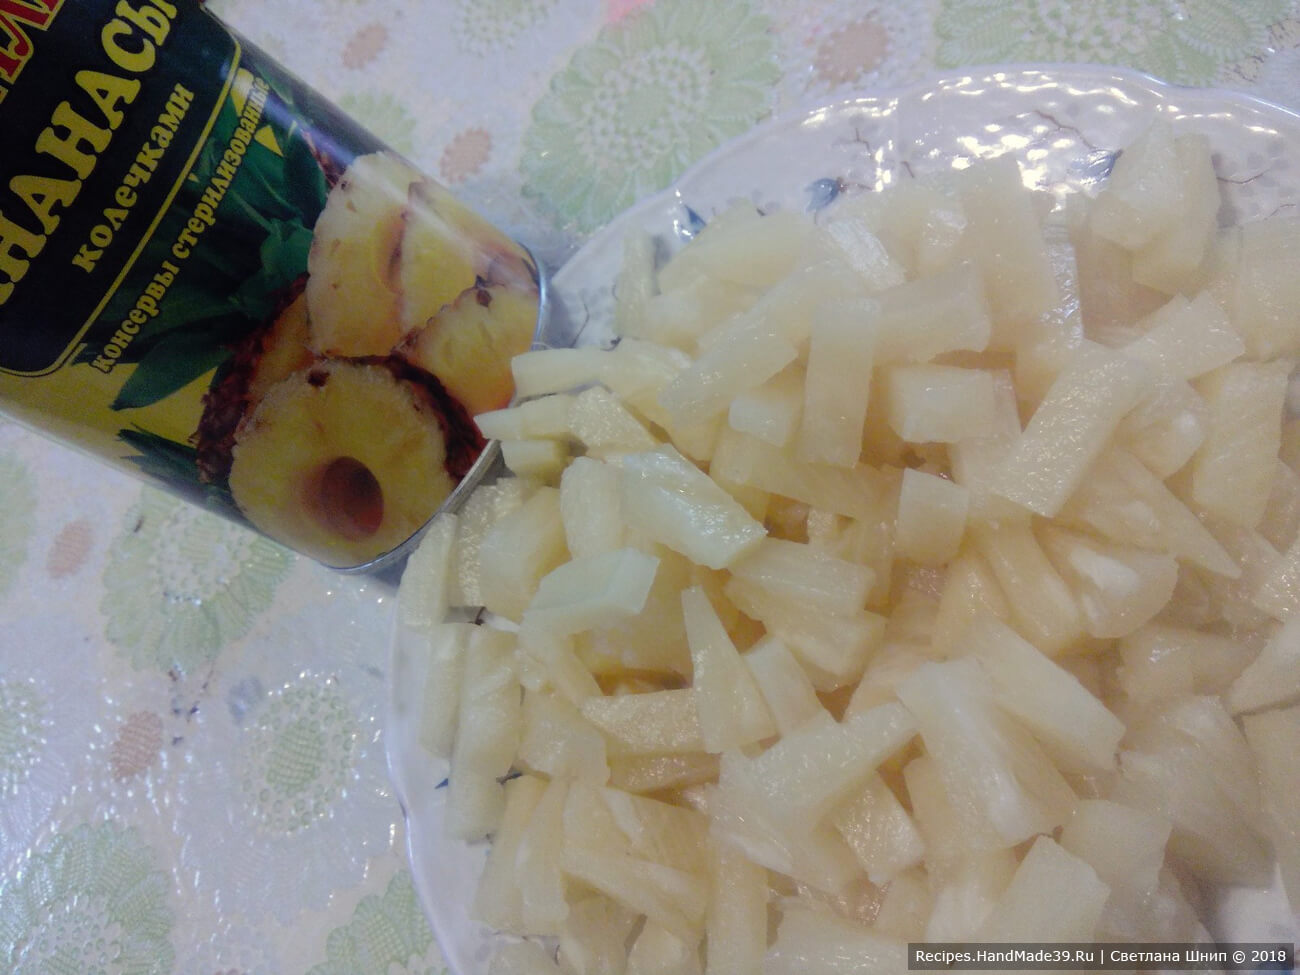 Консервированные ананасы нарезать кусочками, сок из банки в салате не использовать